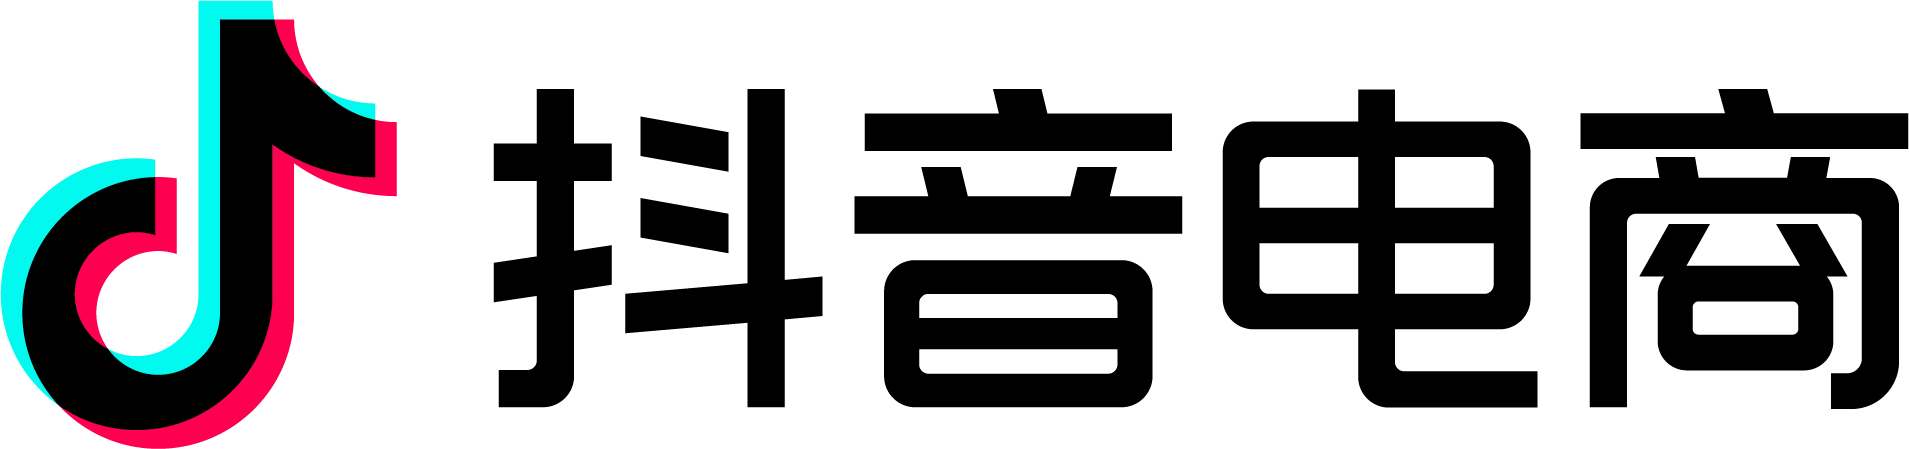 抖音电商logo